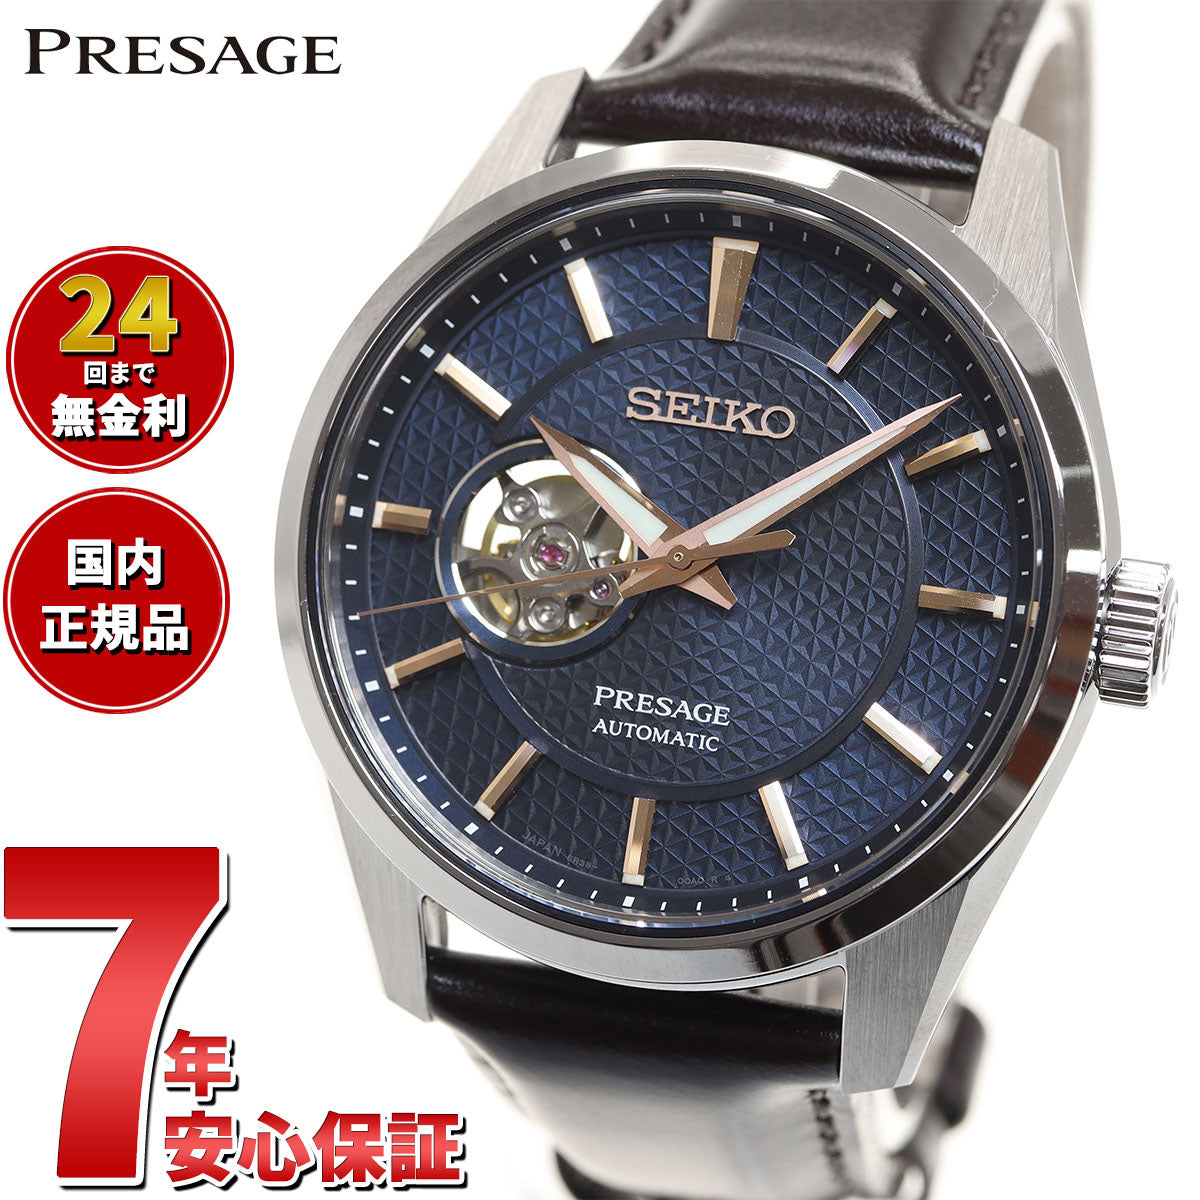 セイコー SEIKO 腕時計 メンズ SARX099 セイコー メカニカル プレザージュ プレステージライン シャープ エッジ ド シリーズ Prestige line Sharp Edged Series 自動巻き（6R38/手巻つき） ネイビーxブラウン アナログ表示